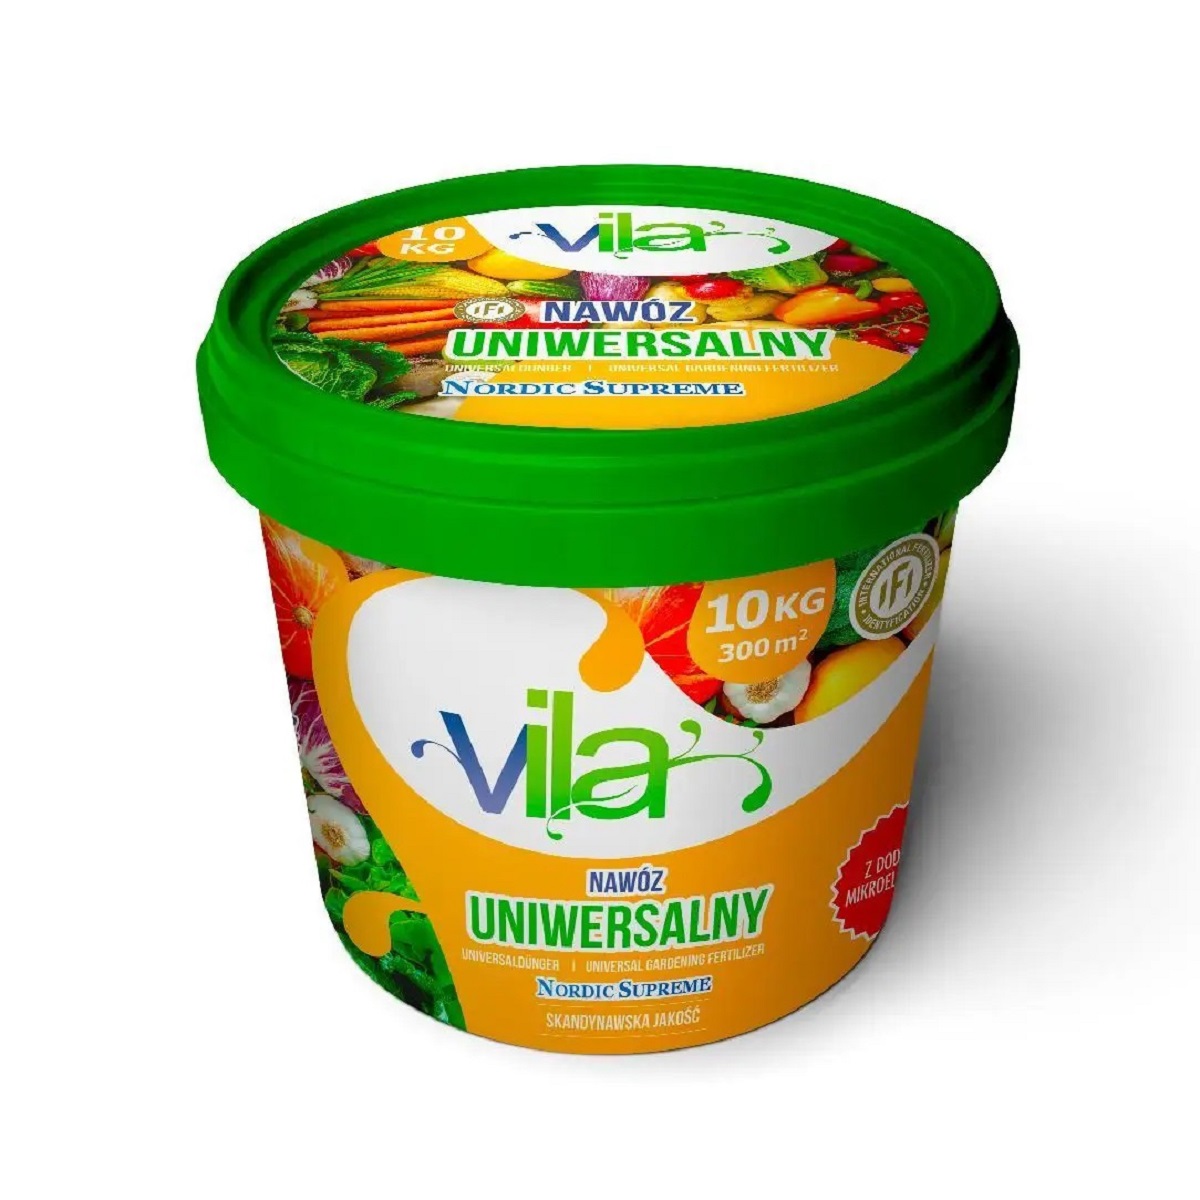 Удобрение Yara Vila Nordic Supreme универсальное 10 кг ведро / Яра Вила Нордик Суприм